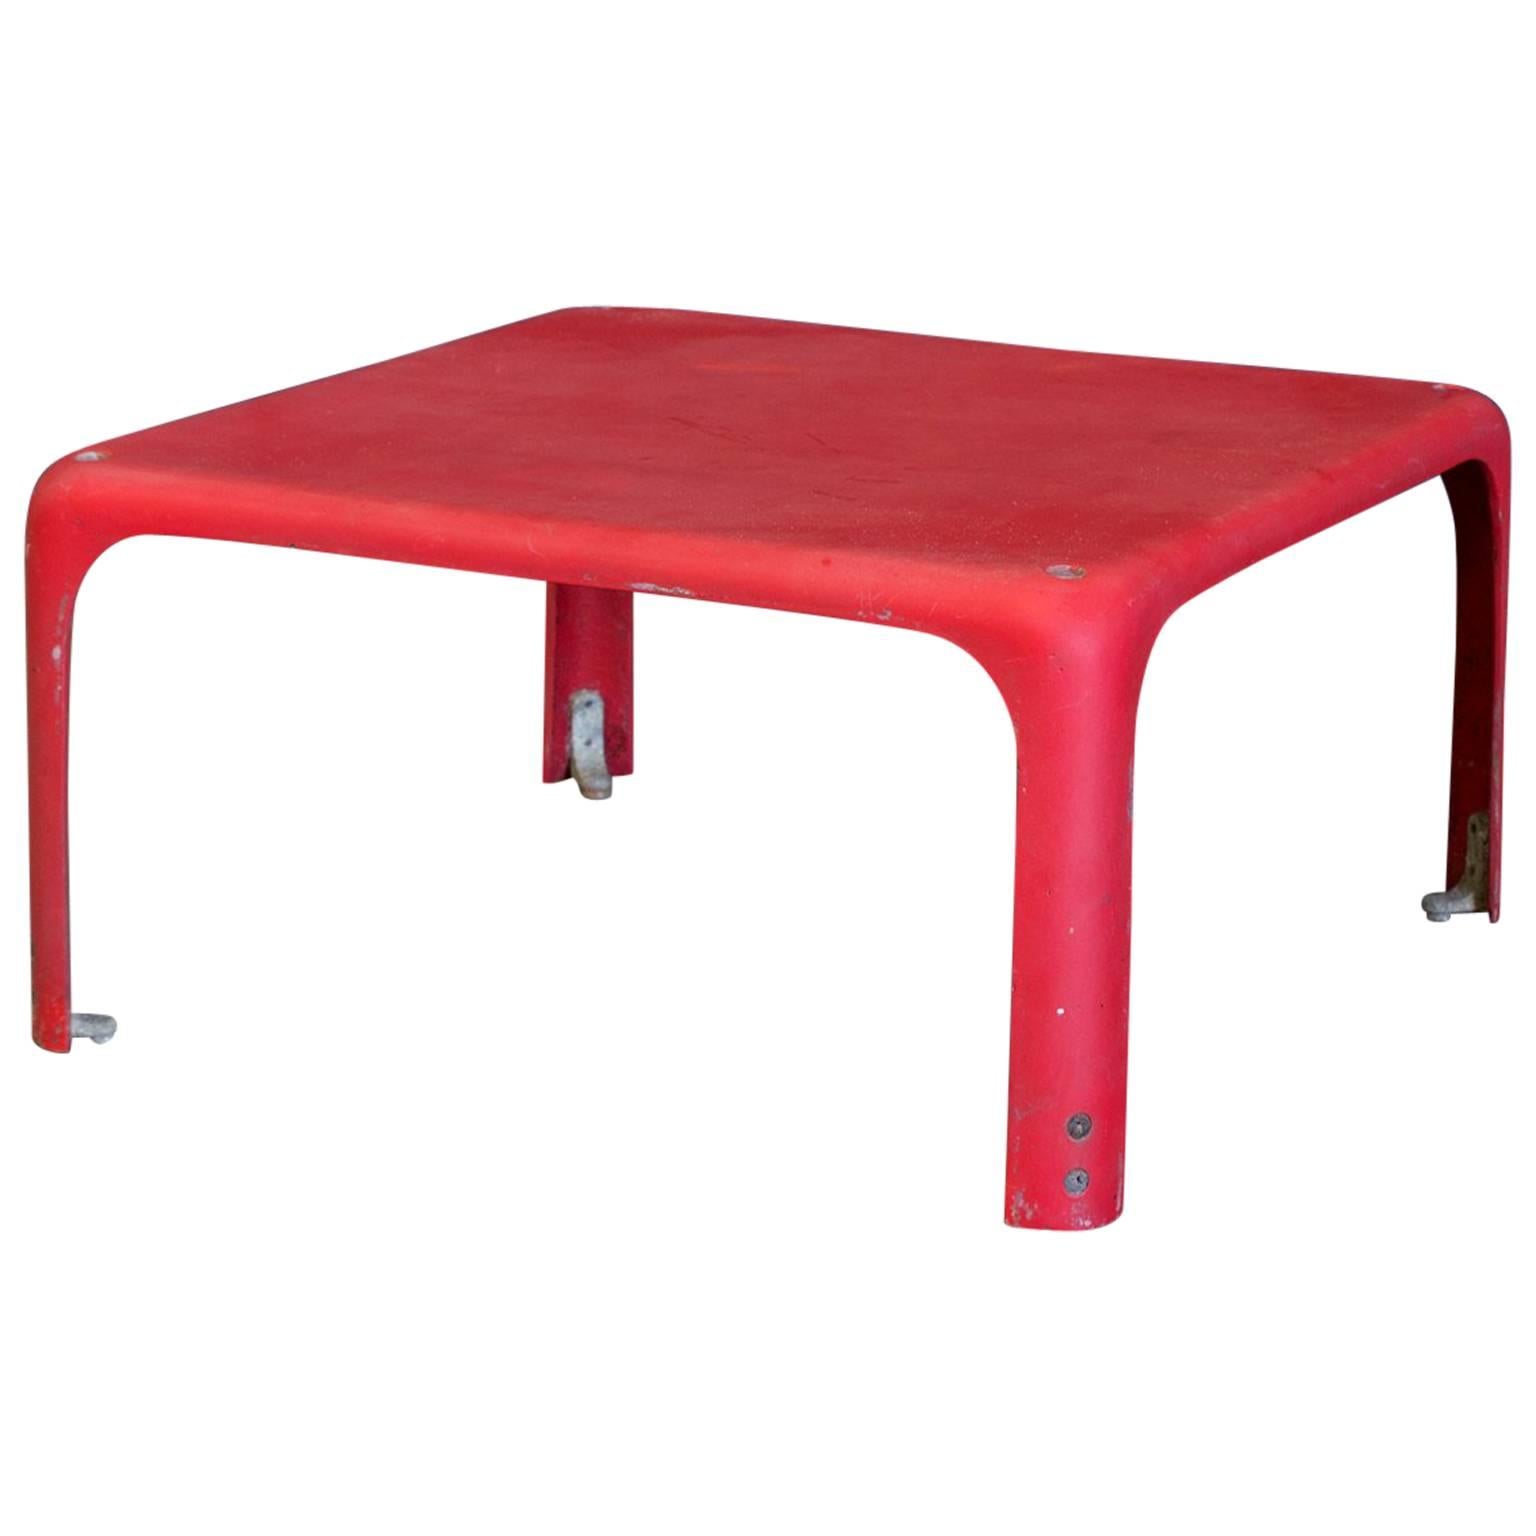 1964, Vico Magistretti for Artemide, Red Demetrio 45 Stackable Table